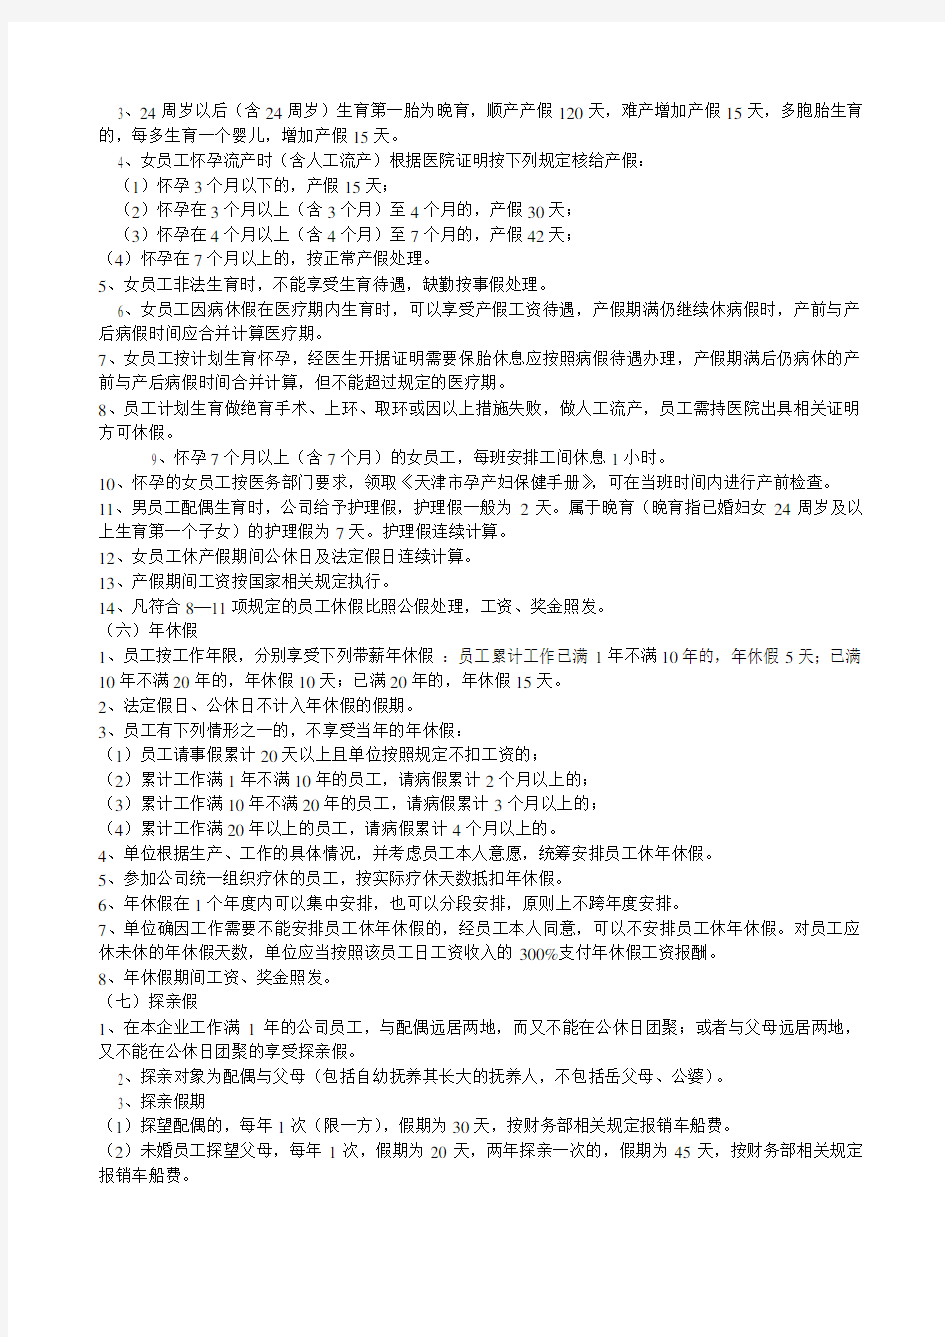 中国移动通信集团天津有限公司员工考勤管理办法